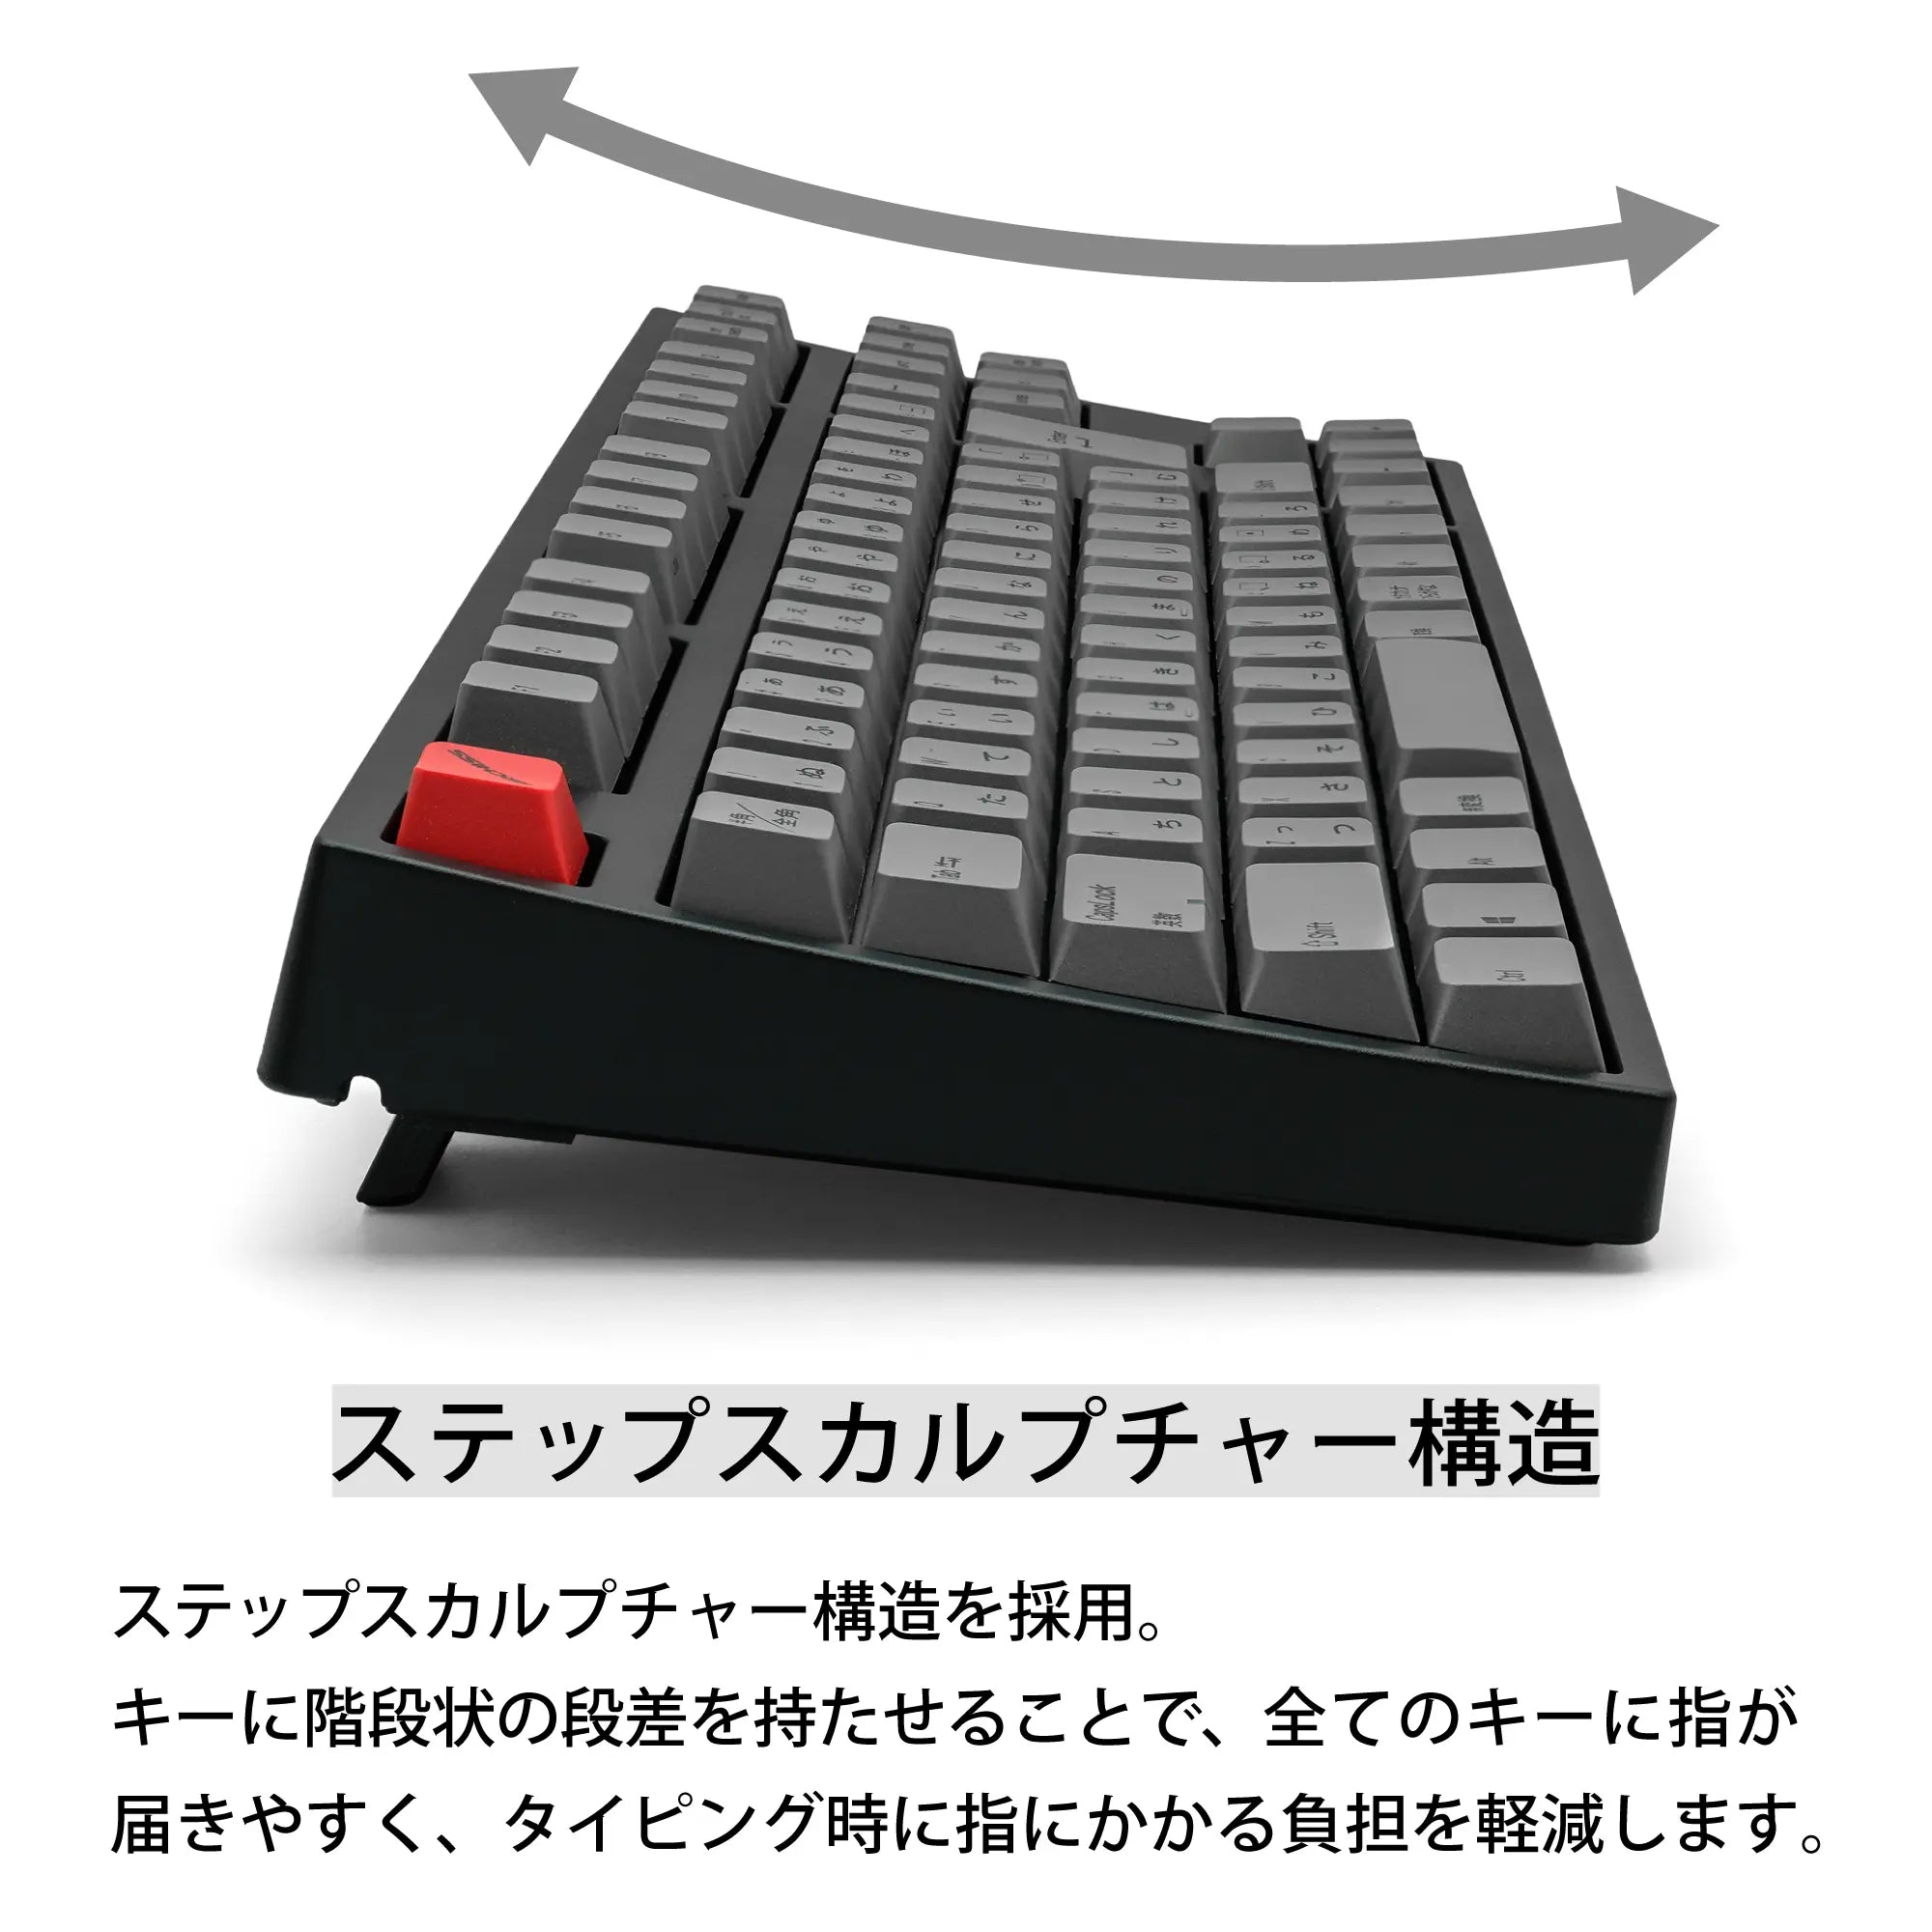 数量限定安いARCHISS Maestro TKL (日本語配列 キー数:91， 静音赤軸) キーボード